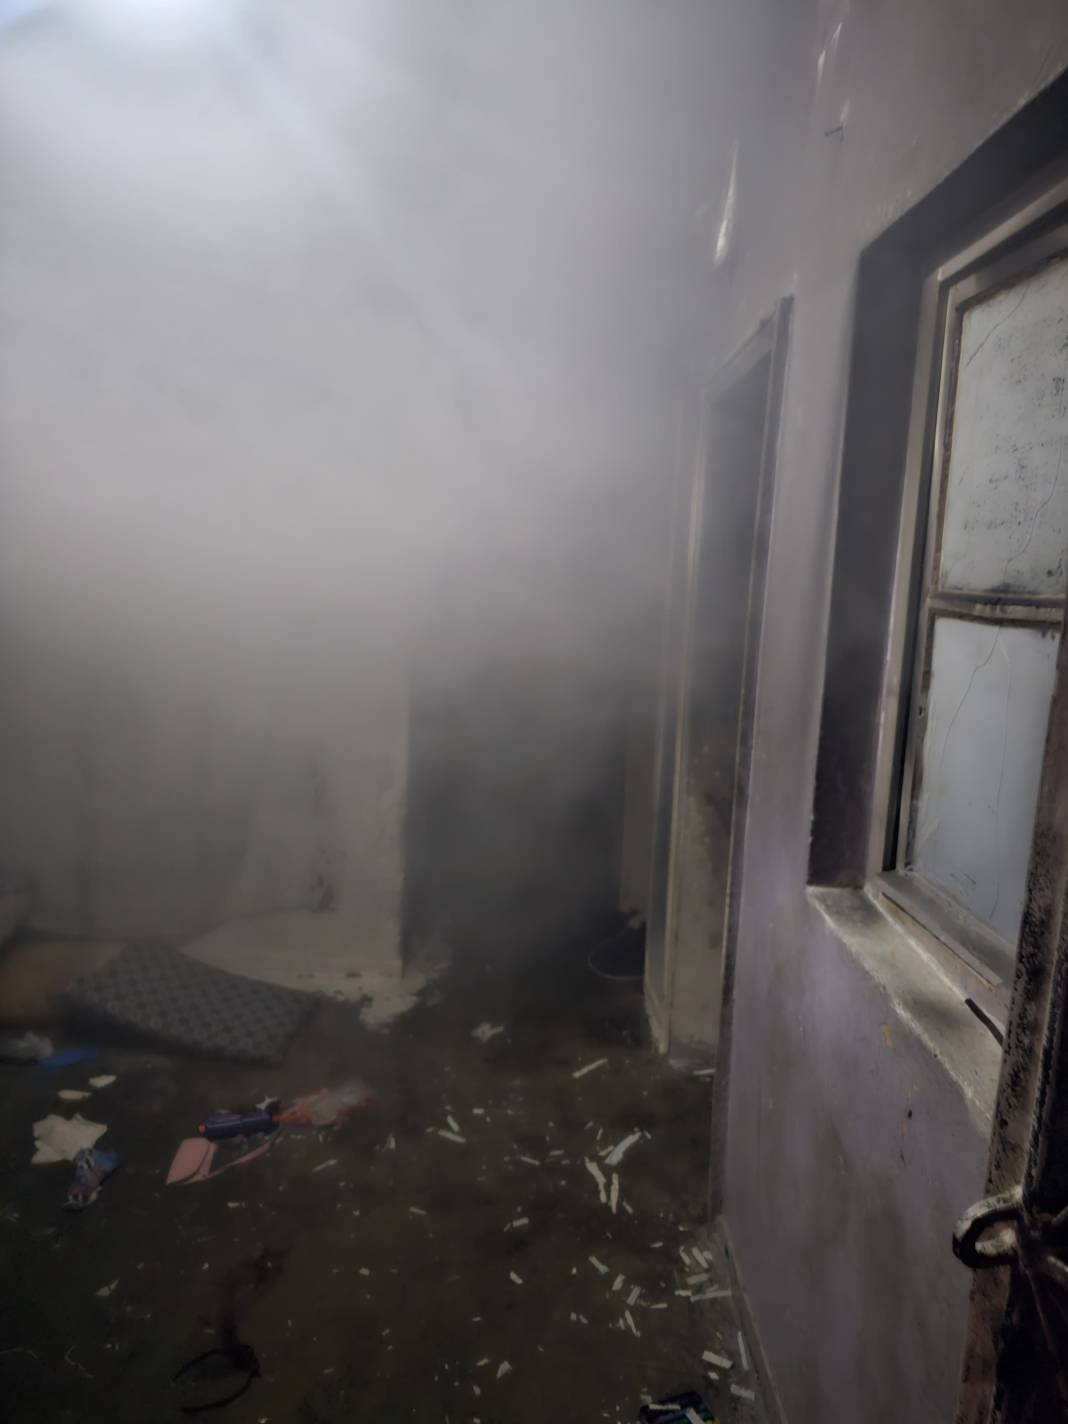 Diyarbakır'da Suriyeli vahşeti. 5 kişiyi diri diri yakacaklardı 2